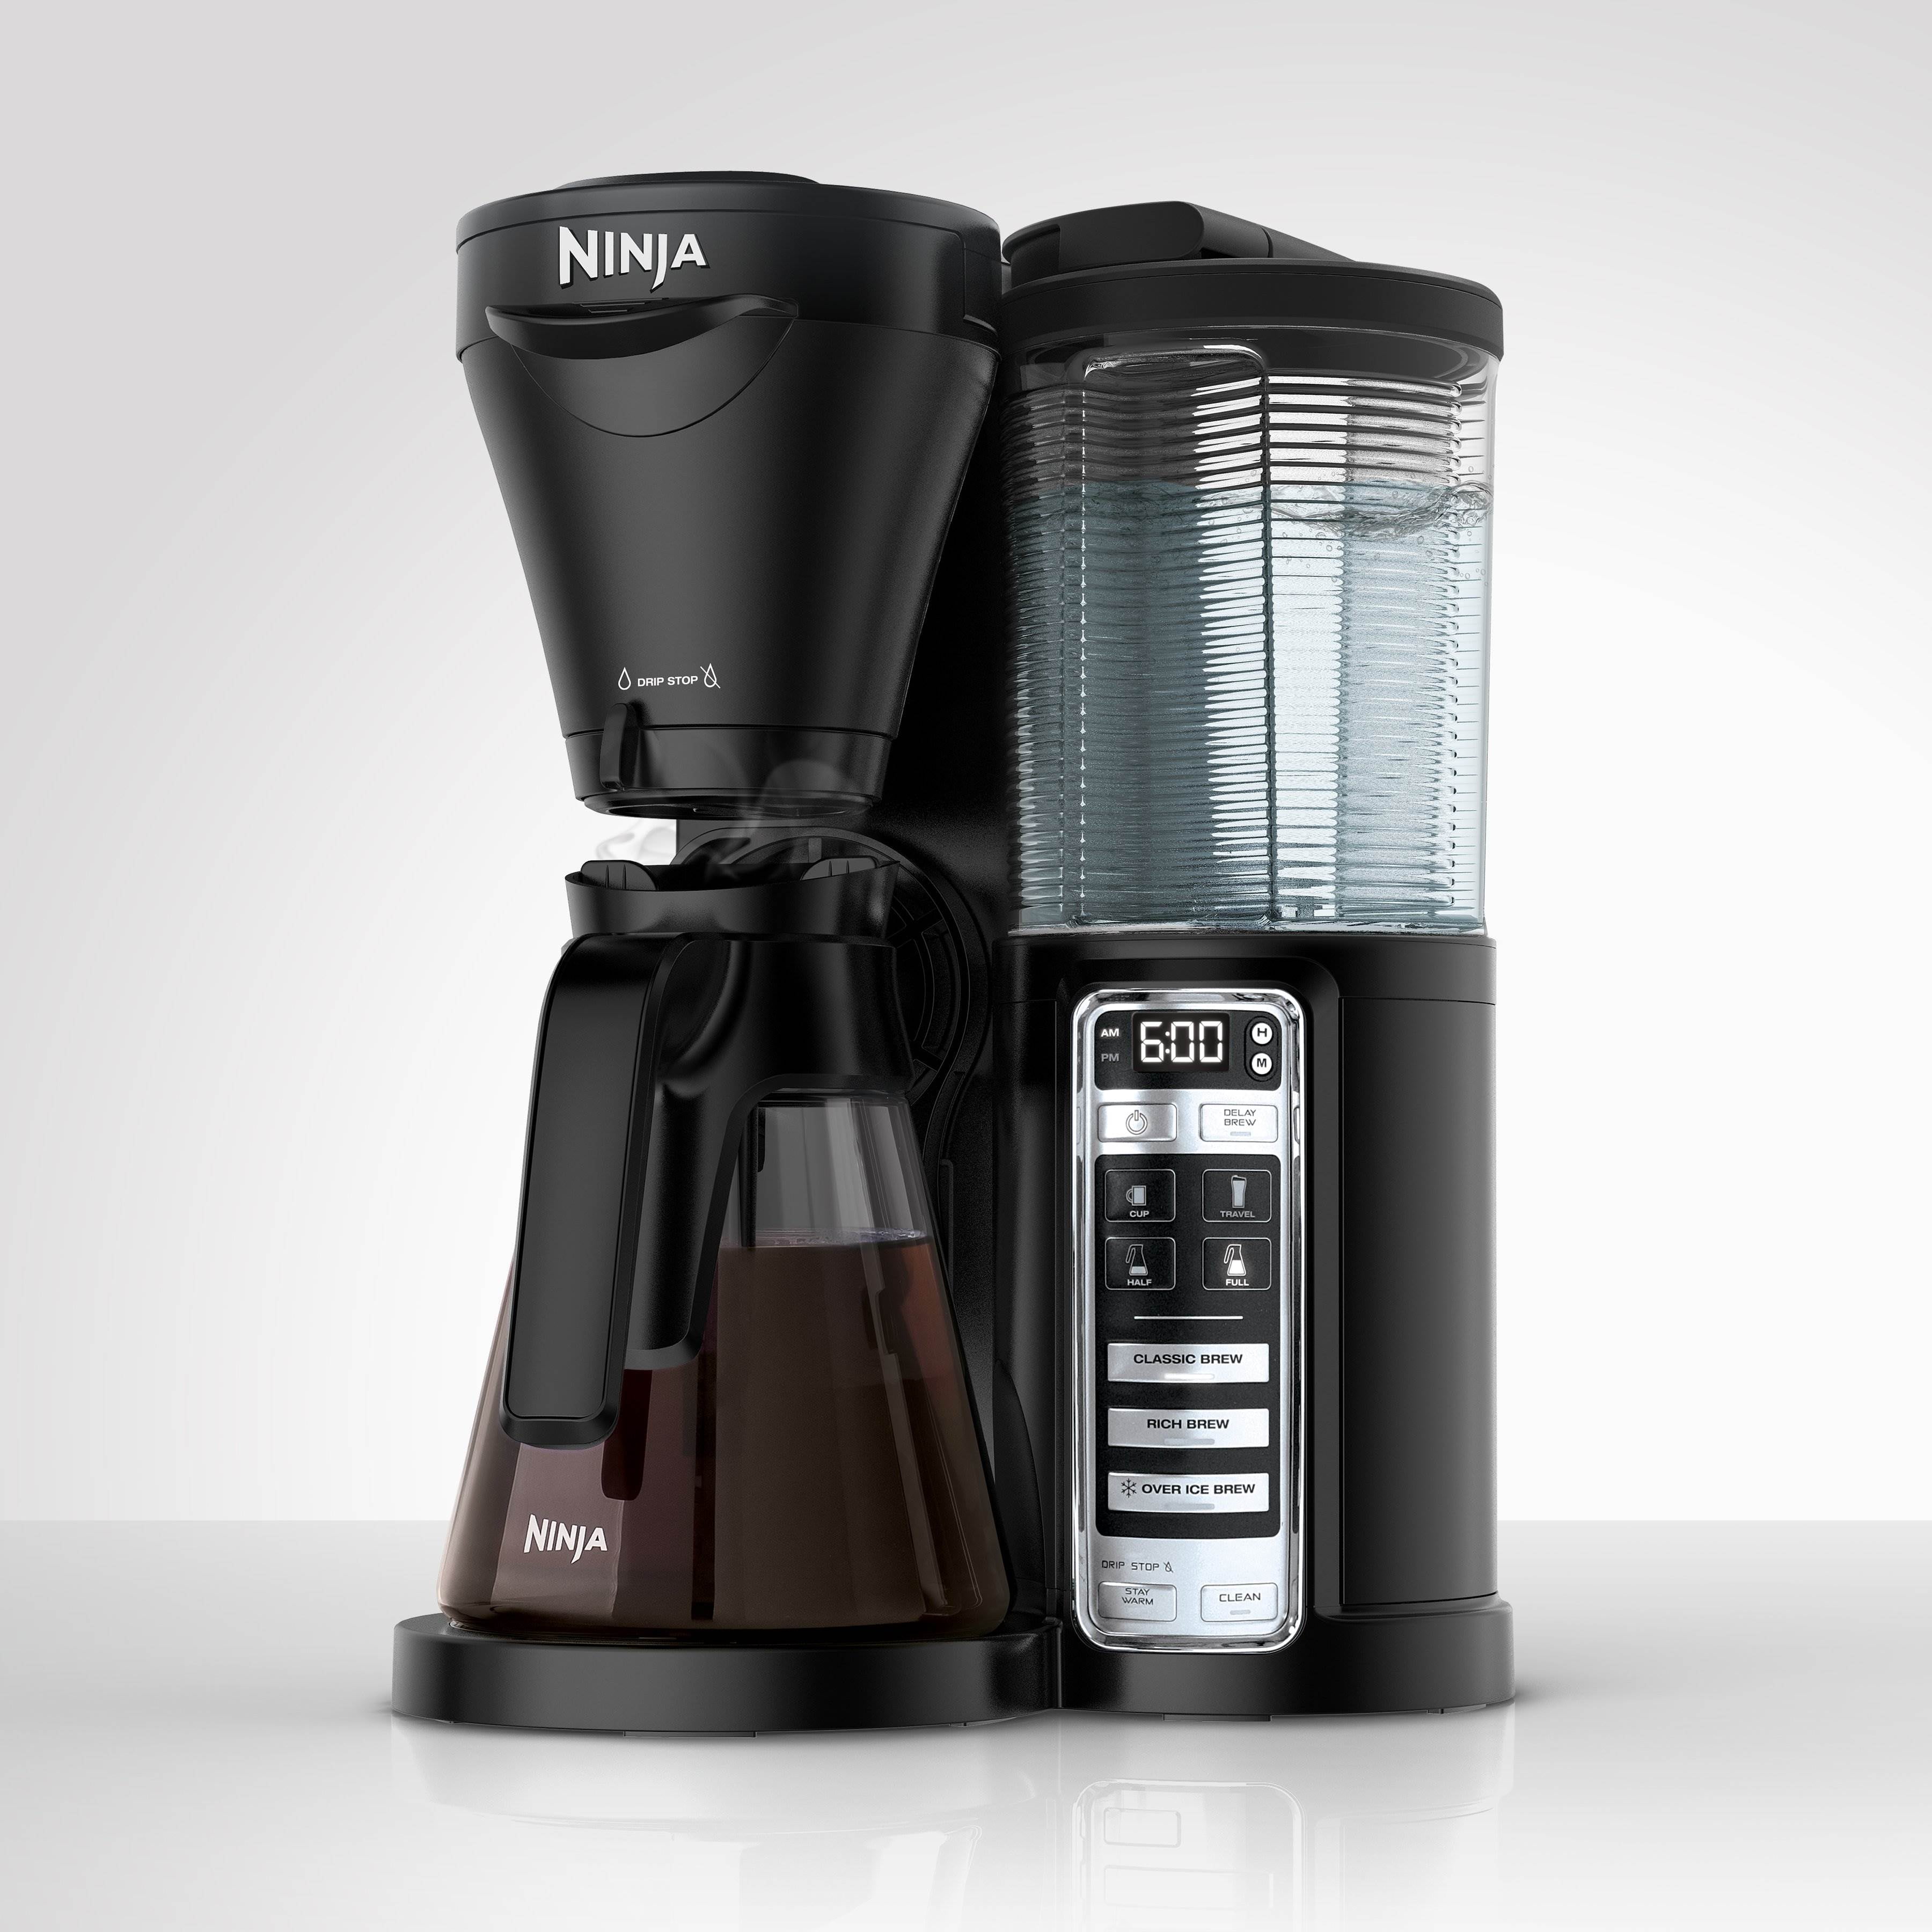 New coffee maker alert 🚨 - Ninja Kitchen